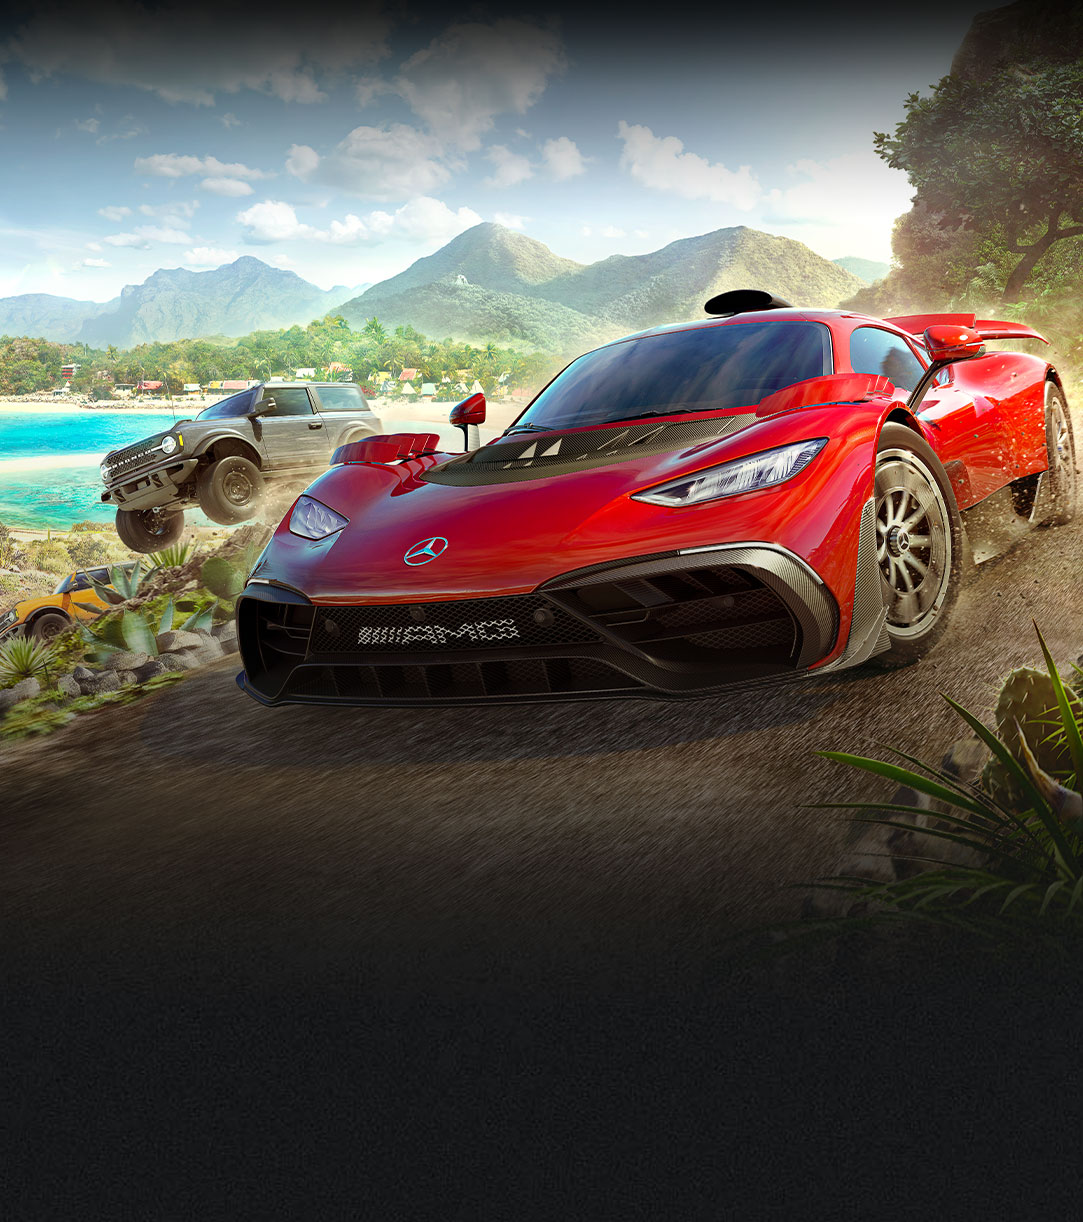 Bilar från Forza Horizon 5 förflyttar sig snabbt över en grusväg vid vatten och en mängd växter.